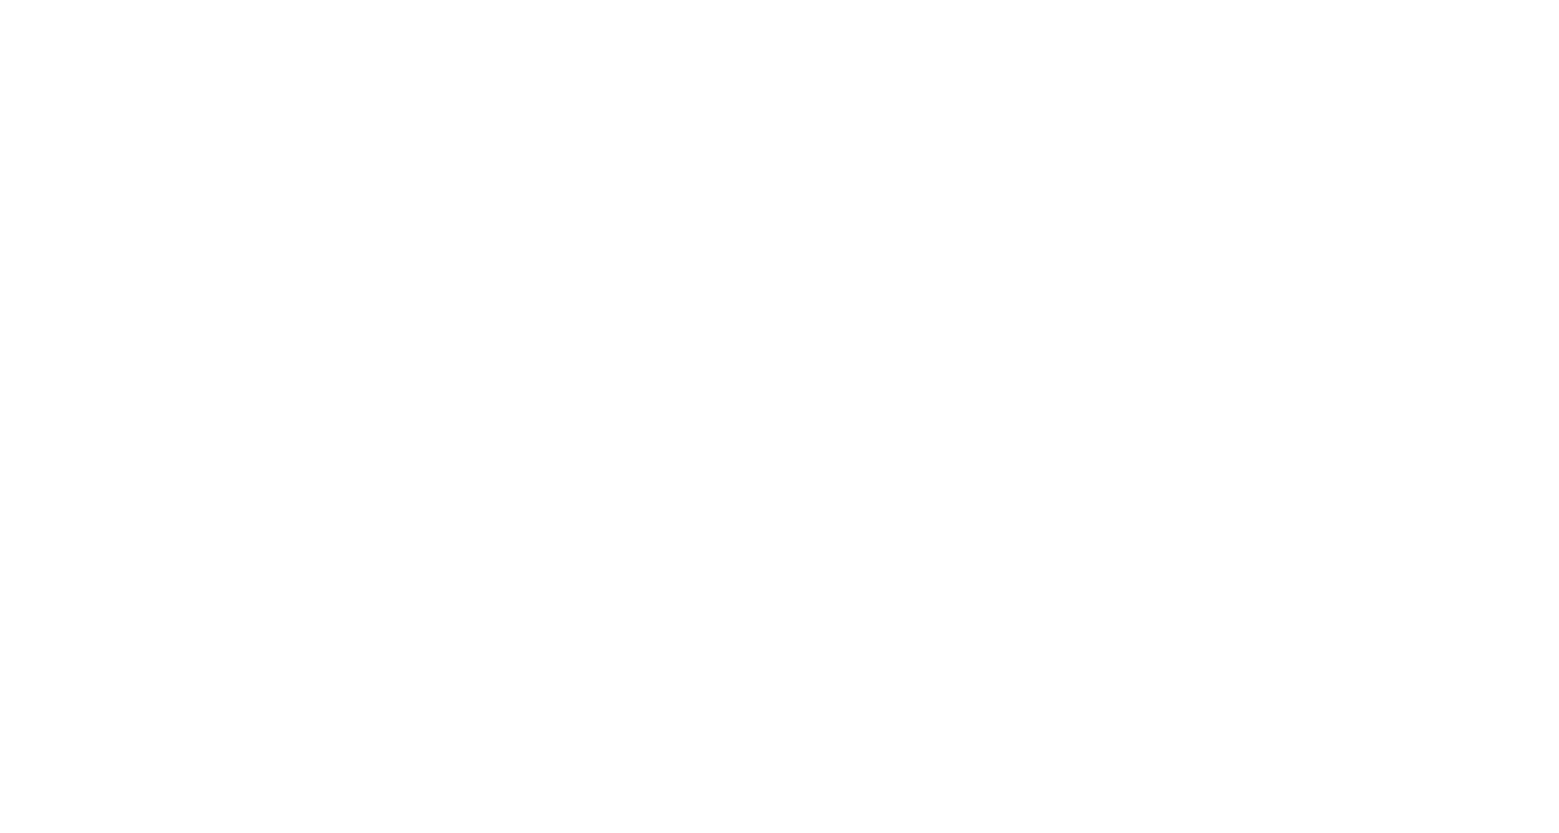 Care Property Invest NV logo large for dark backgrounds (transparent PNG)